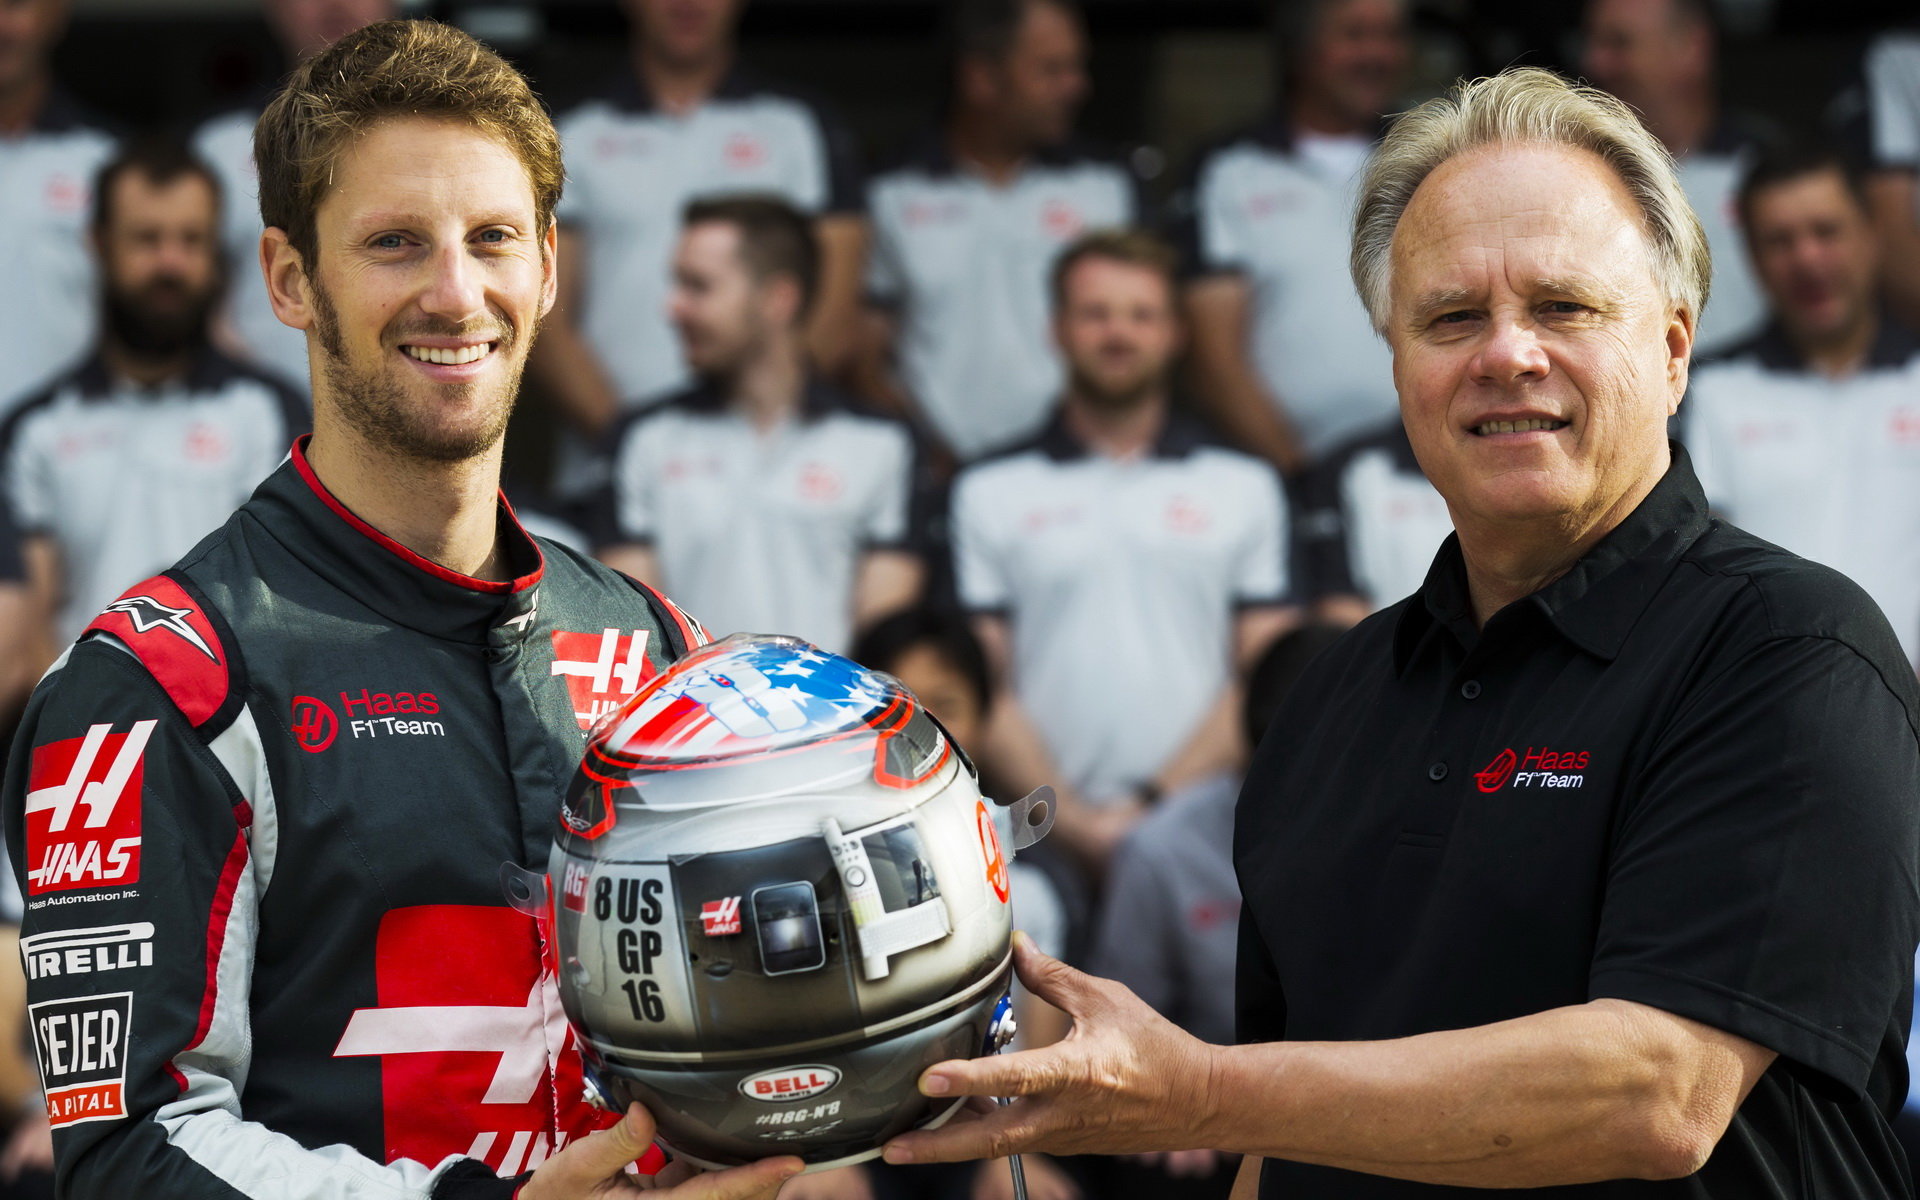 Romain Grosjean (na snímku Gene Haasem) hodnotí šance svého kolegy